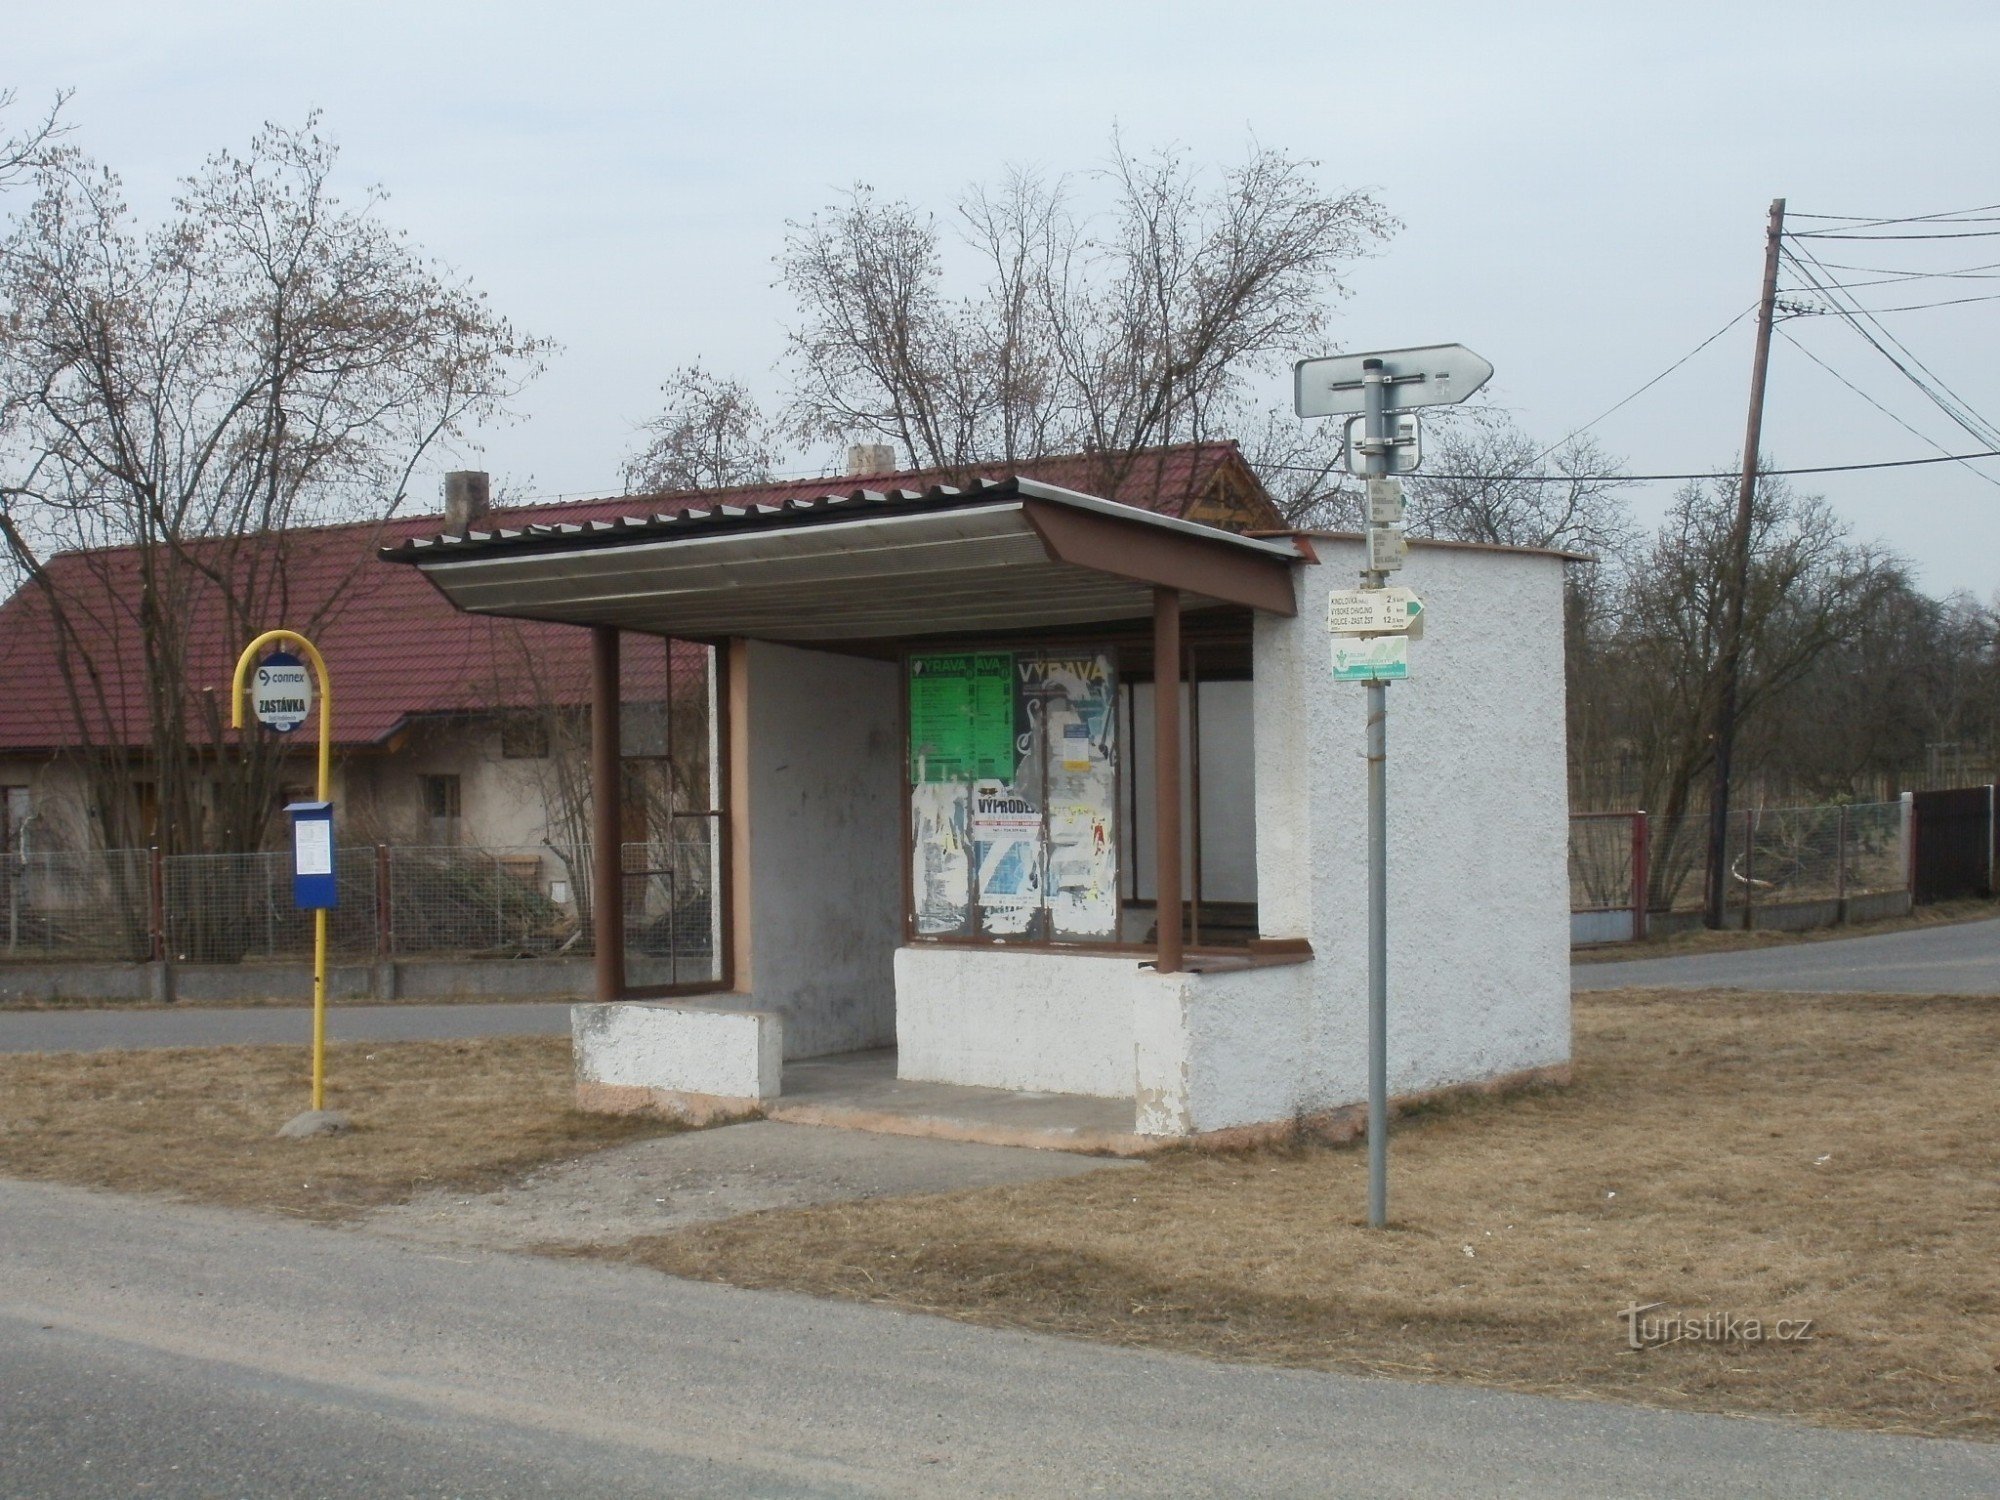 перекресток Ходешовице - автобус